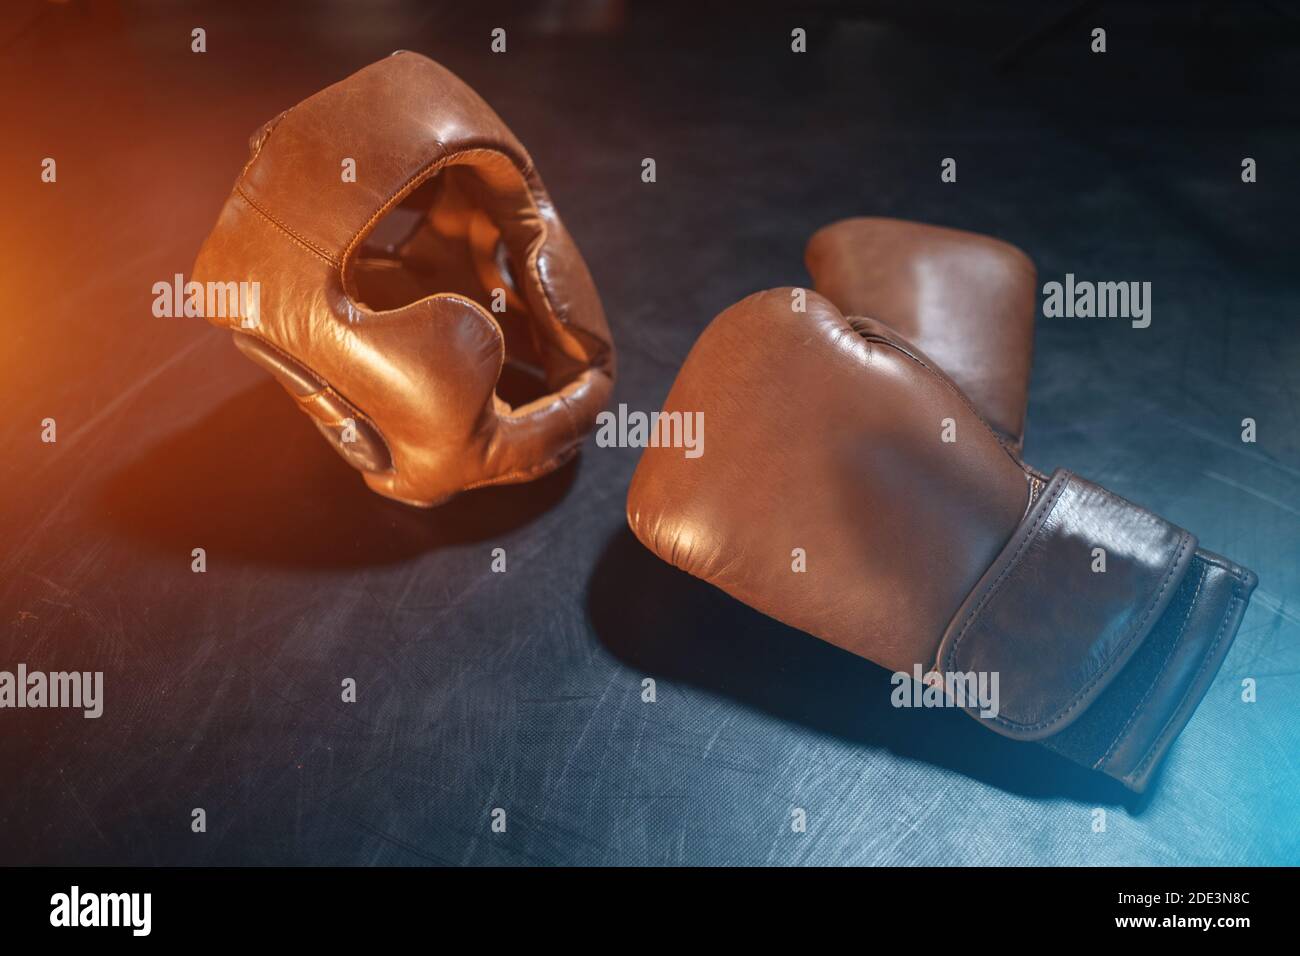 Draufsicht auf Boxhandschuhe und Schutzhelm auf schwarz Hintergrund Stockfoto